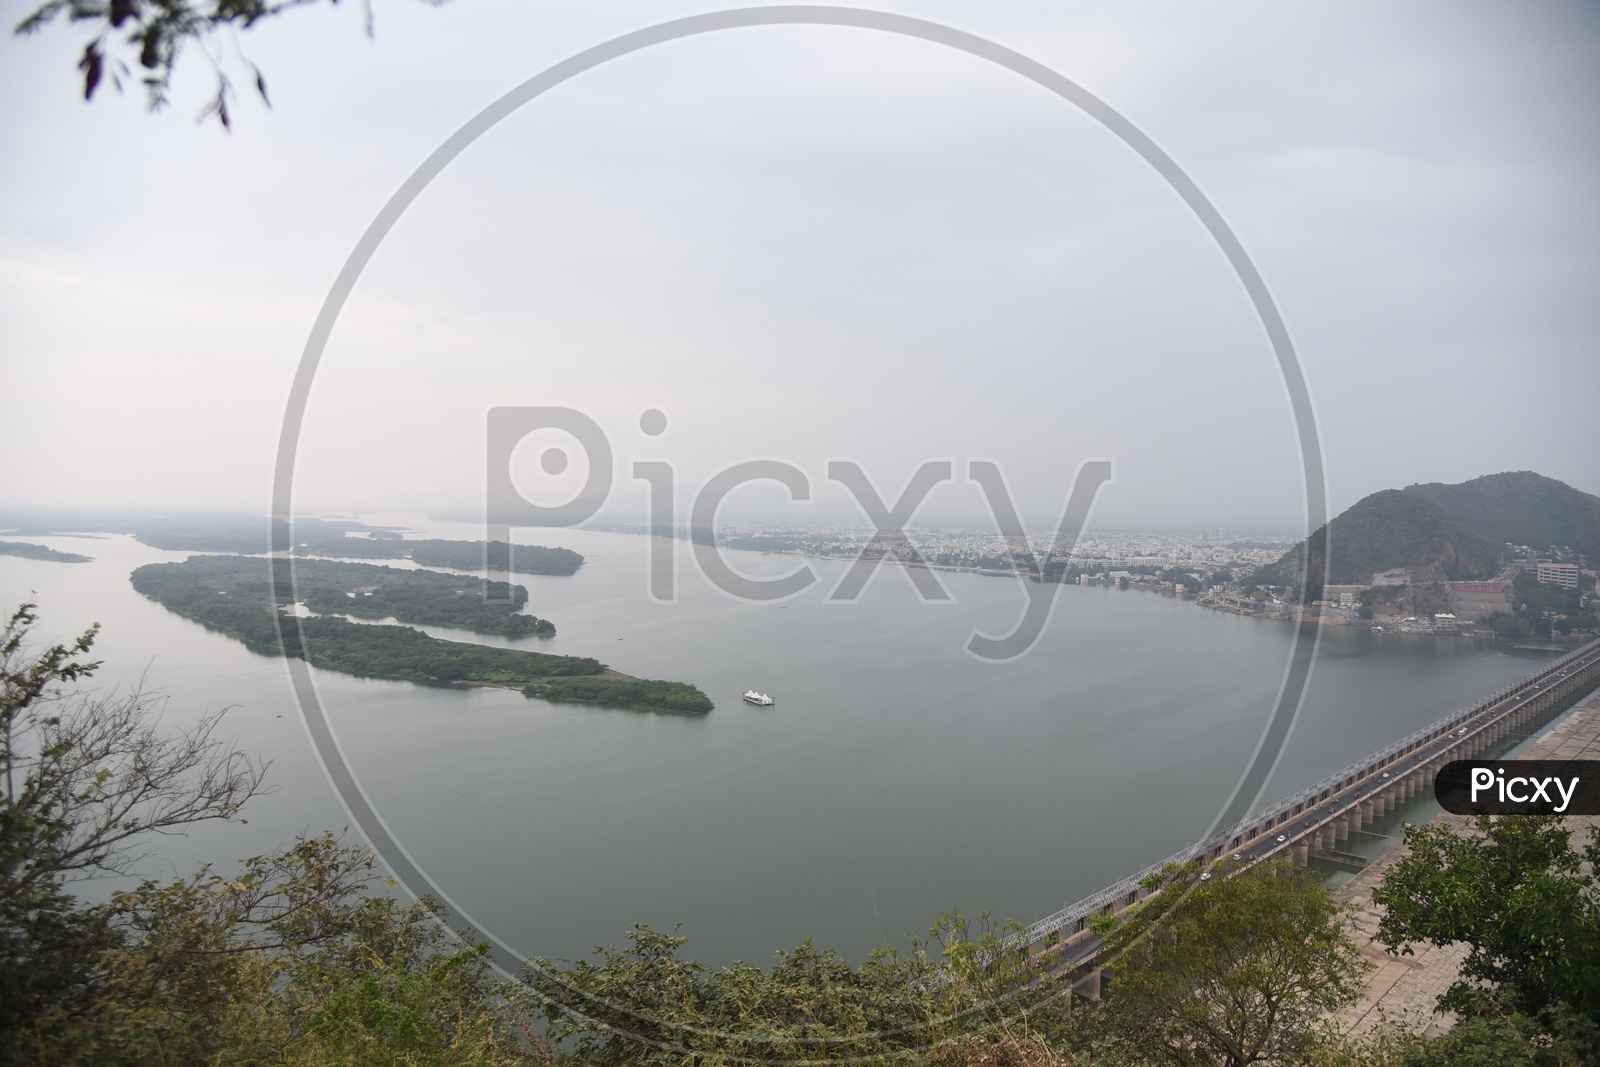 Aerial View of River Krishna in Vijayawada with Prakasam barrage